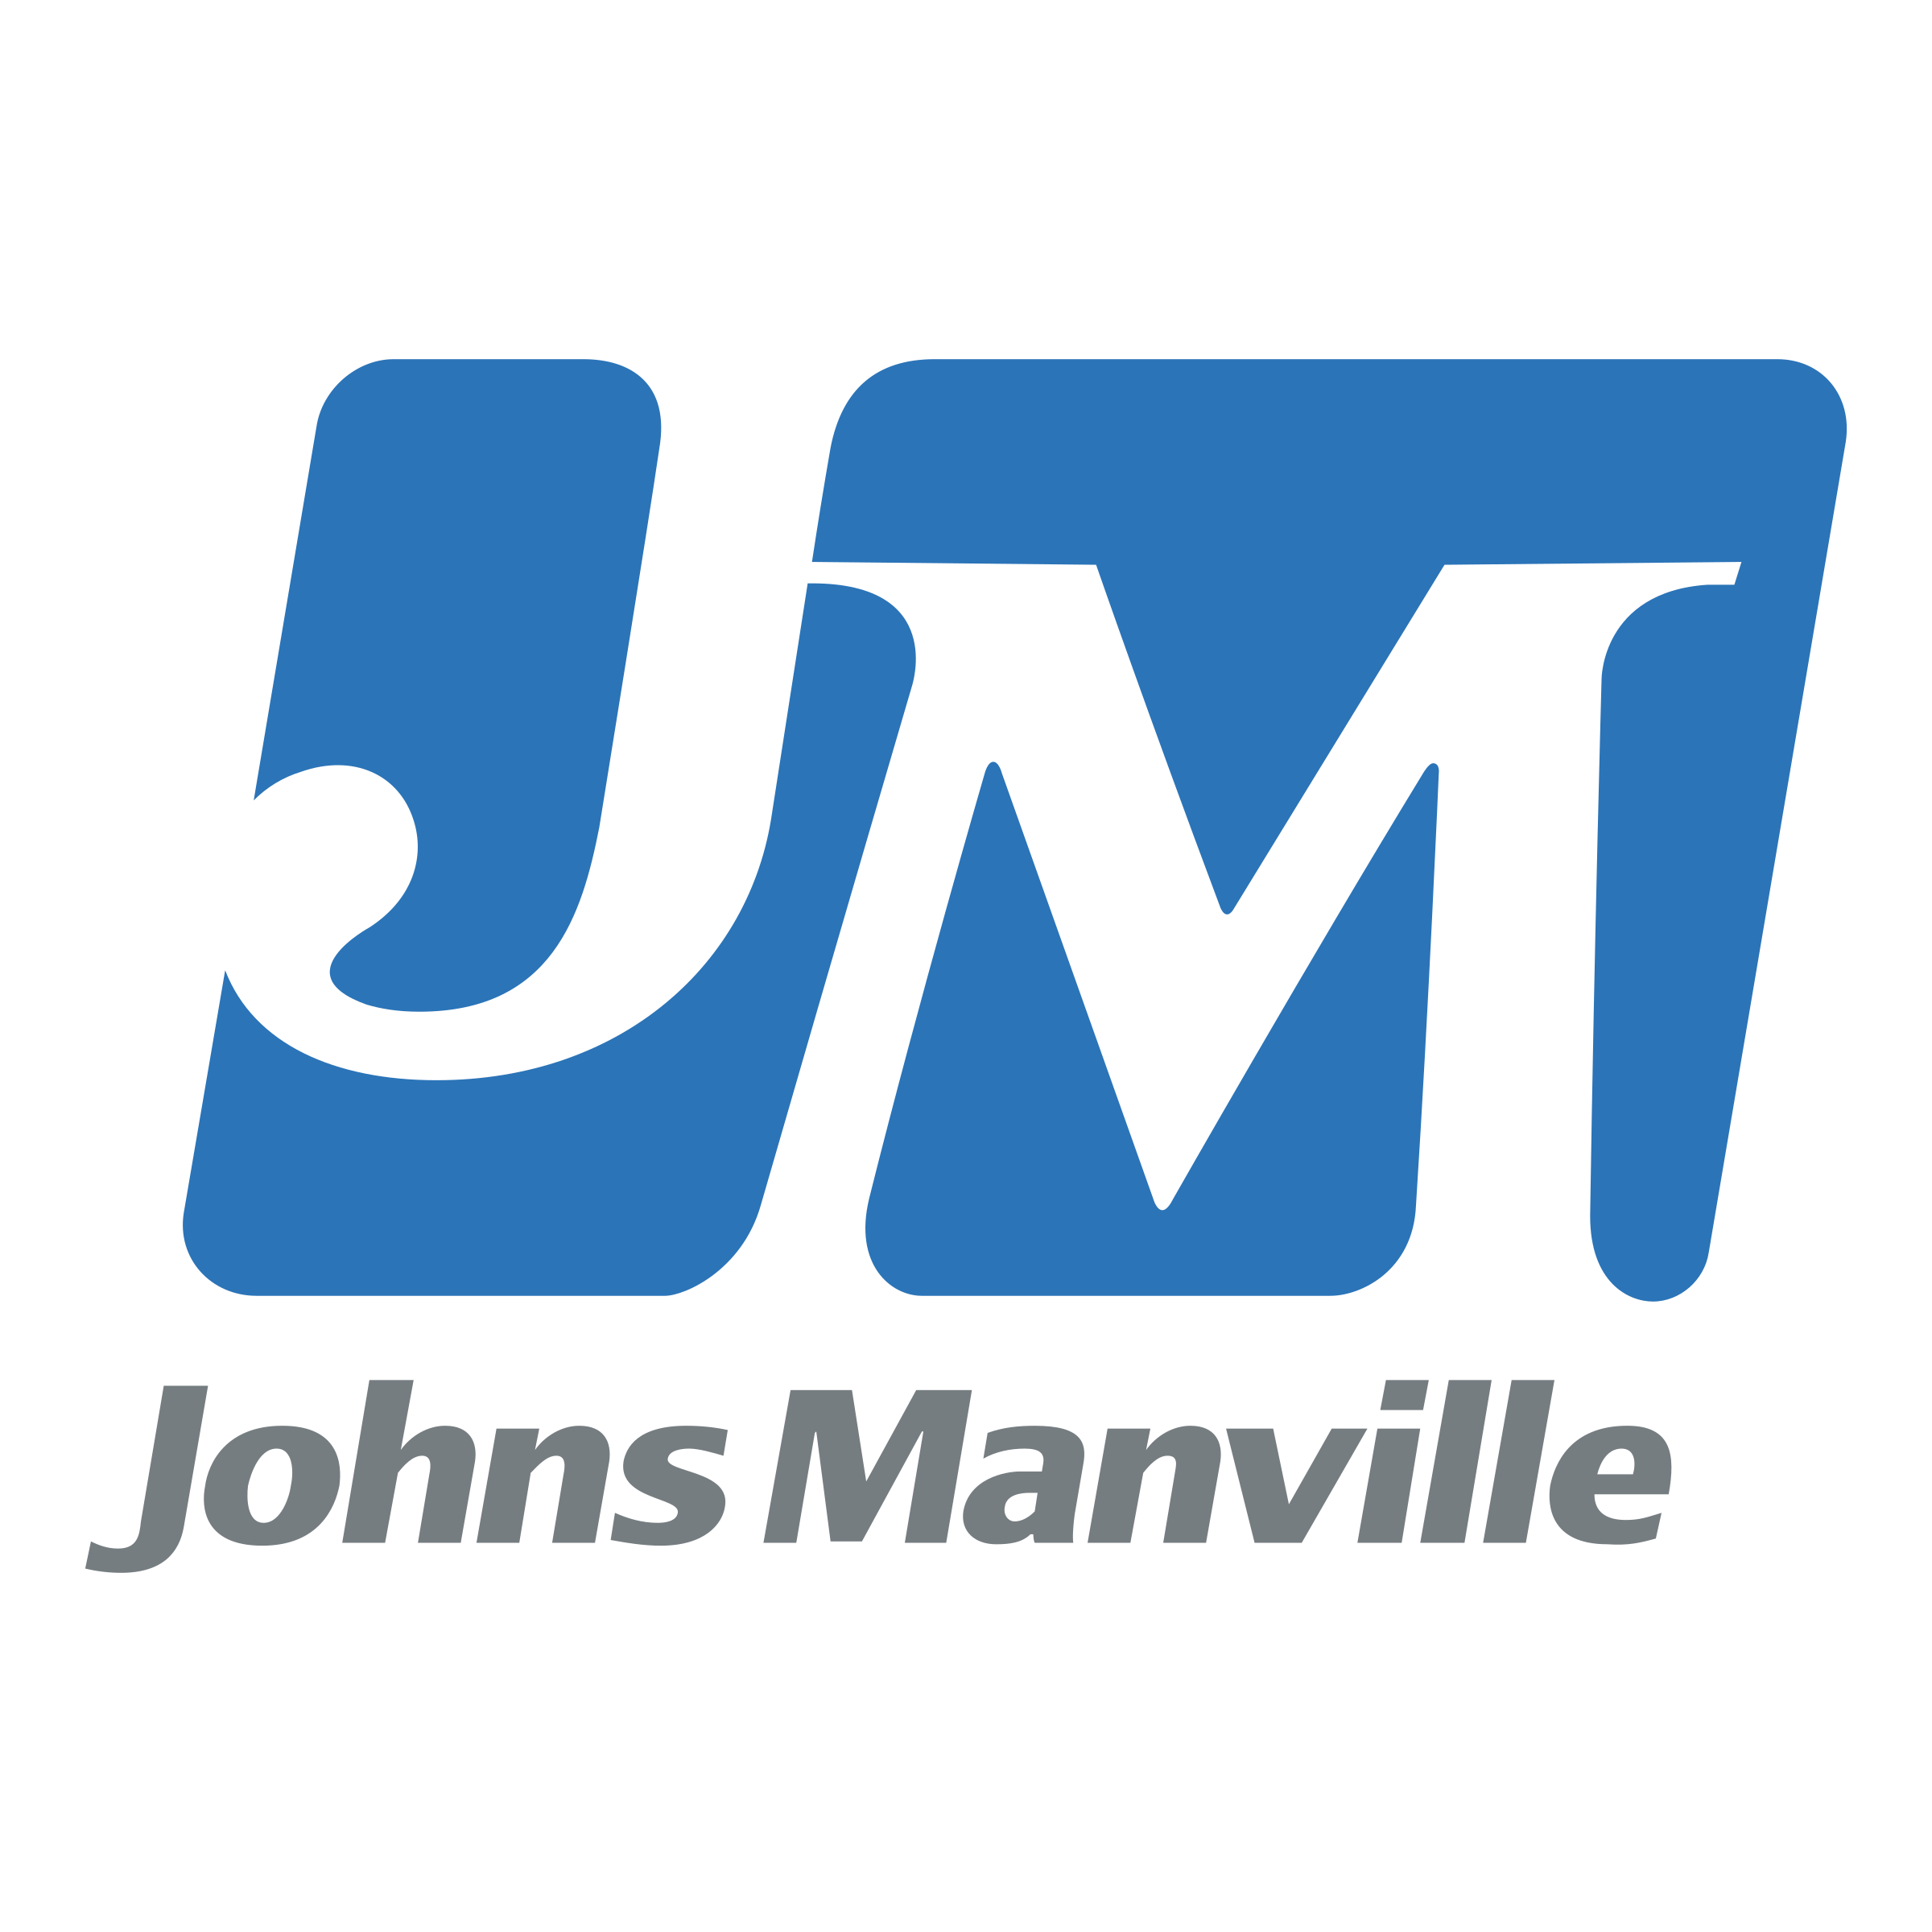 Johns Manville | Construction Partner | SR Homes